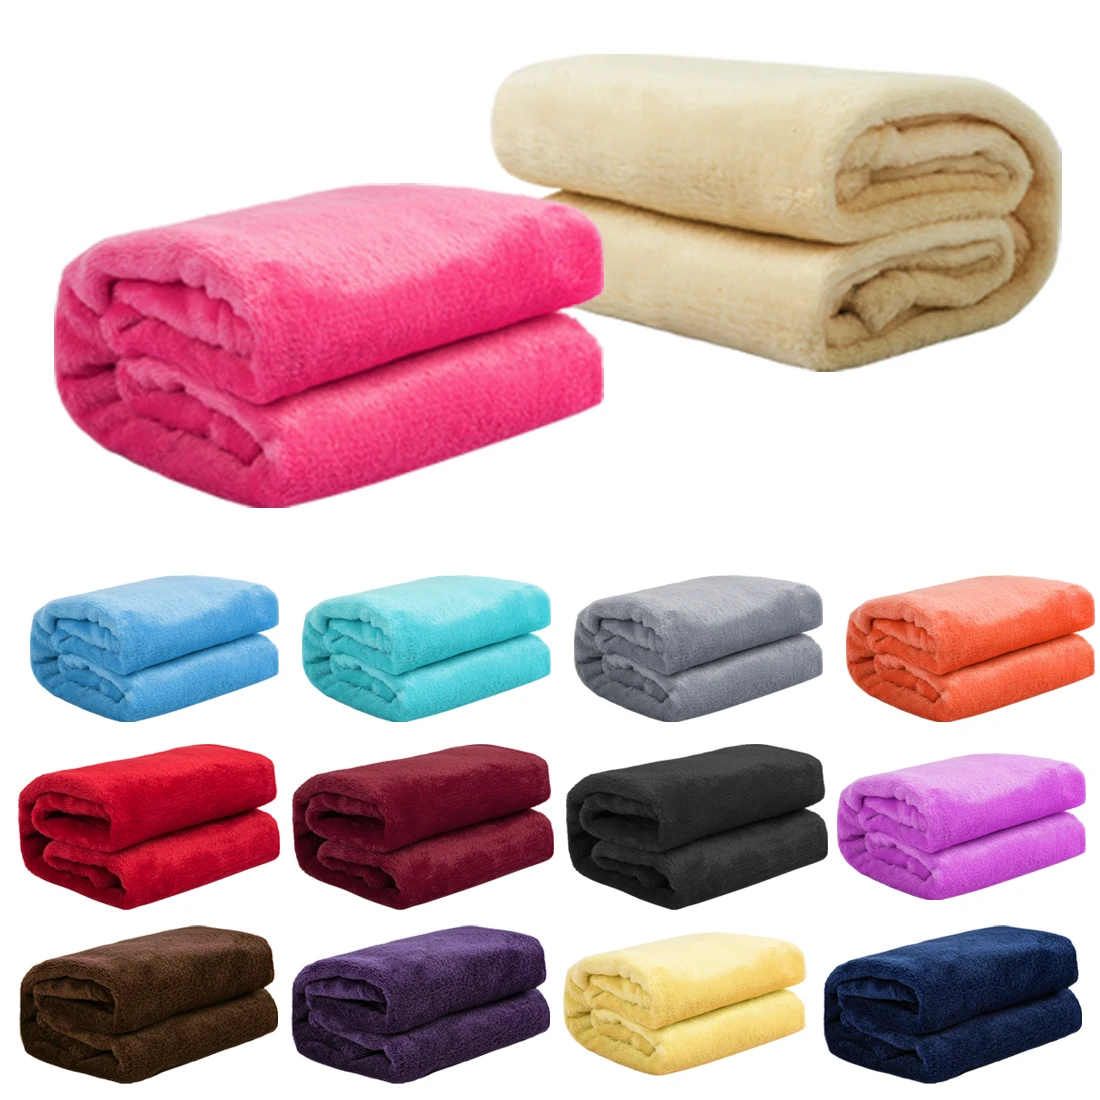 Домашний текстиль фланелевое одеяло розовое супер теплое мягкое одеяло s плед на диван/кровать/Самолет путешествия лоскутное одноцветное покрывало